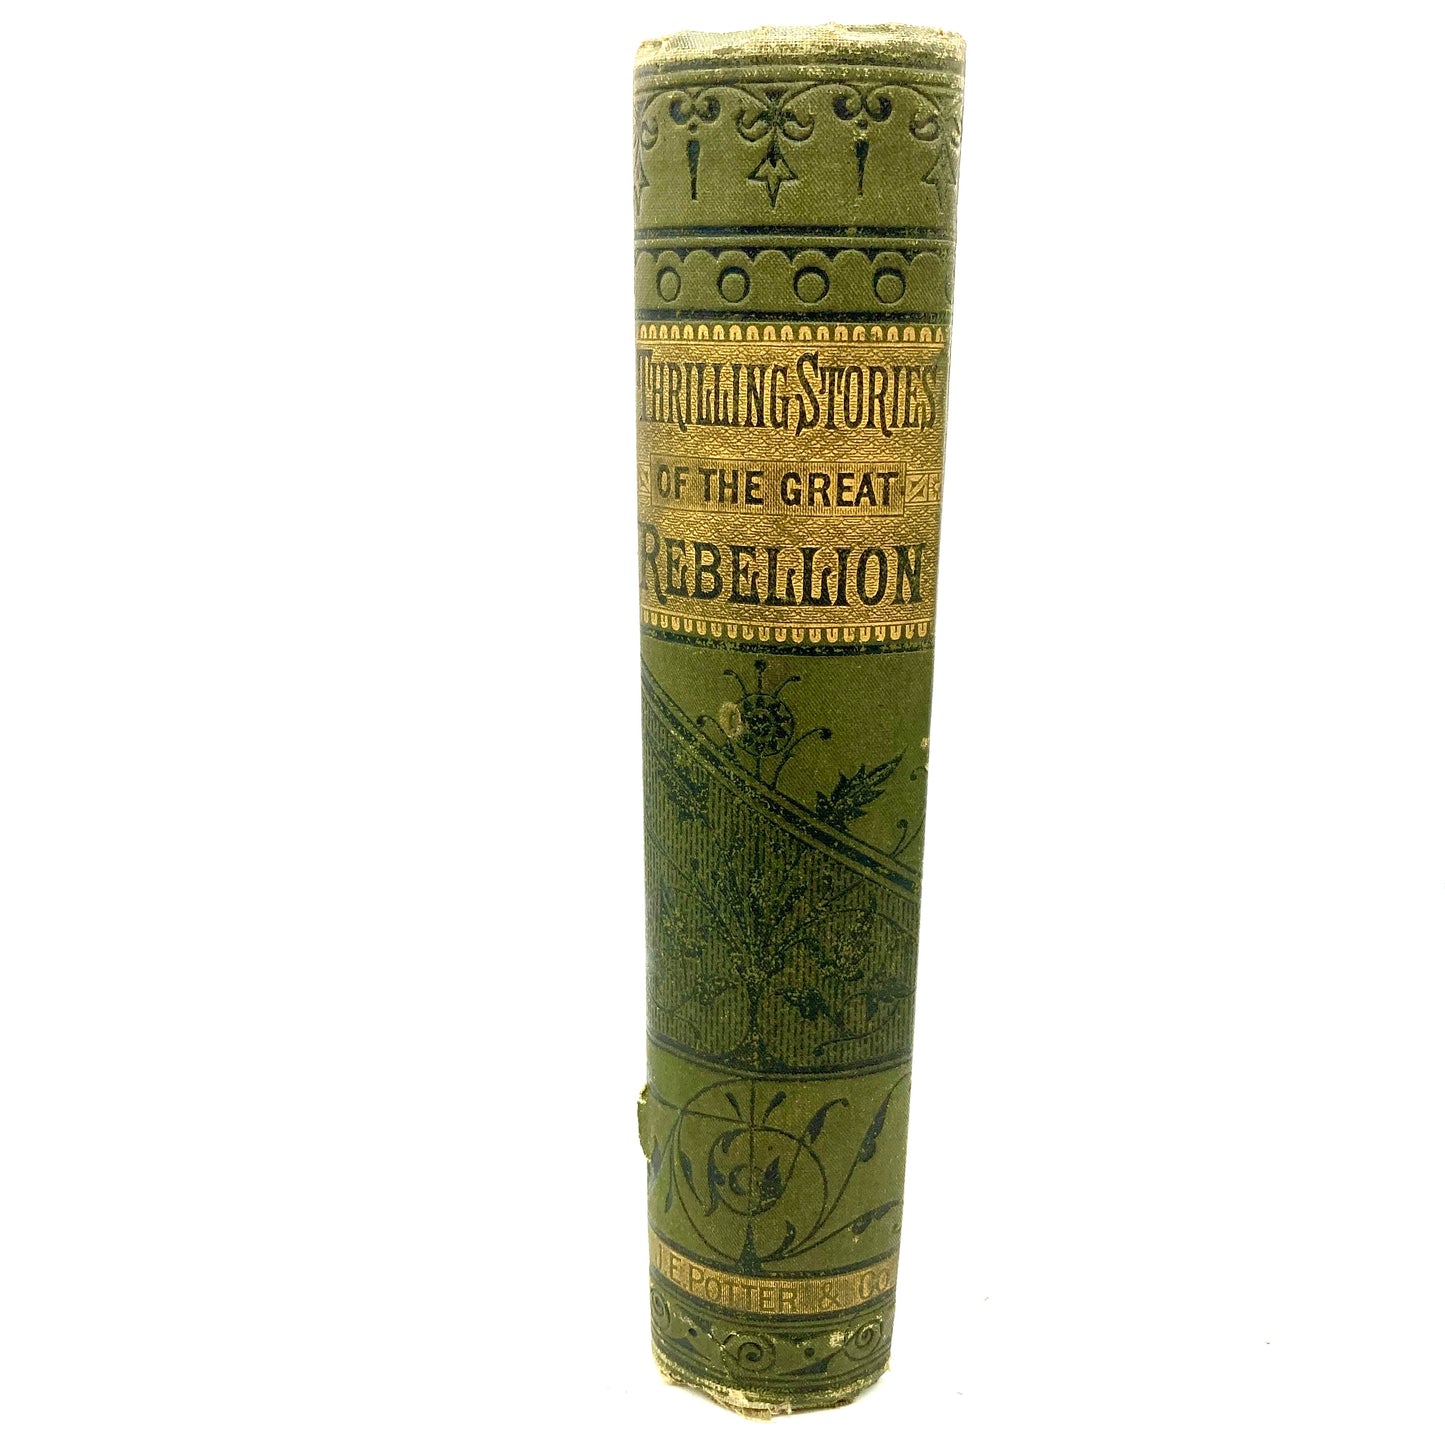 GREENE, Charles S. "Thrilling Stories of the Great Rebellion" [John E. Potter, 1864]